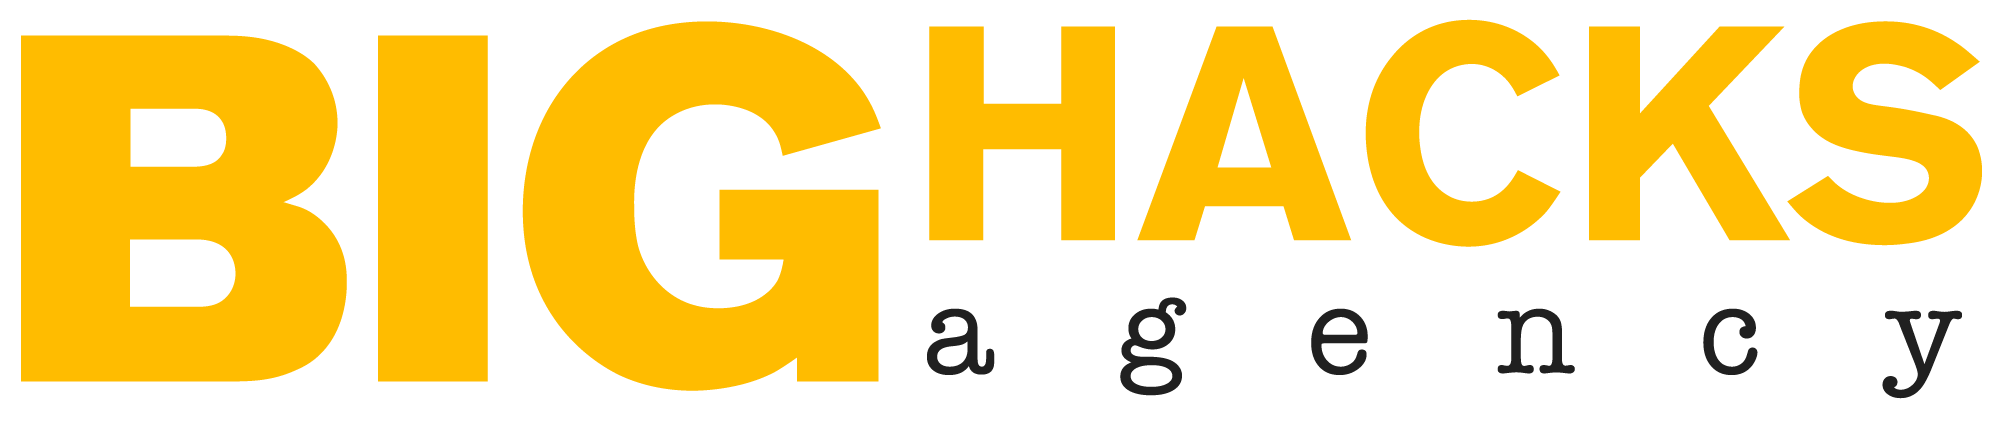 agencia BIGHACKS logo amarillo con gris